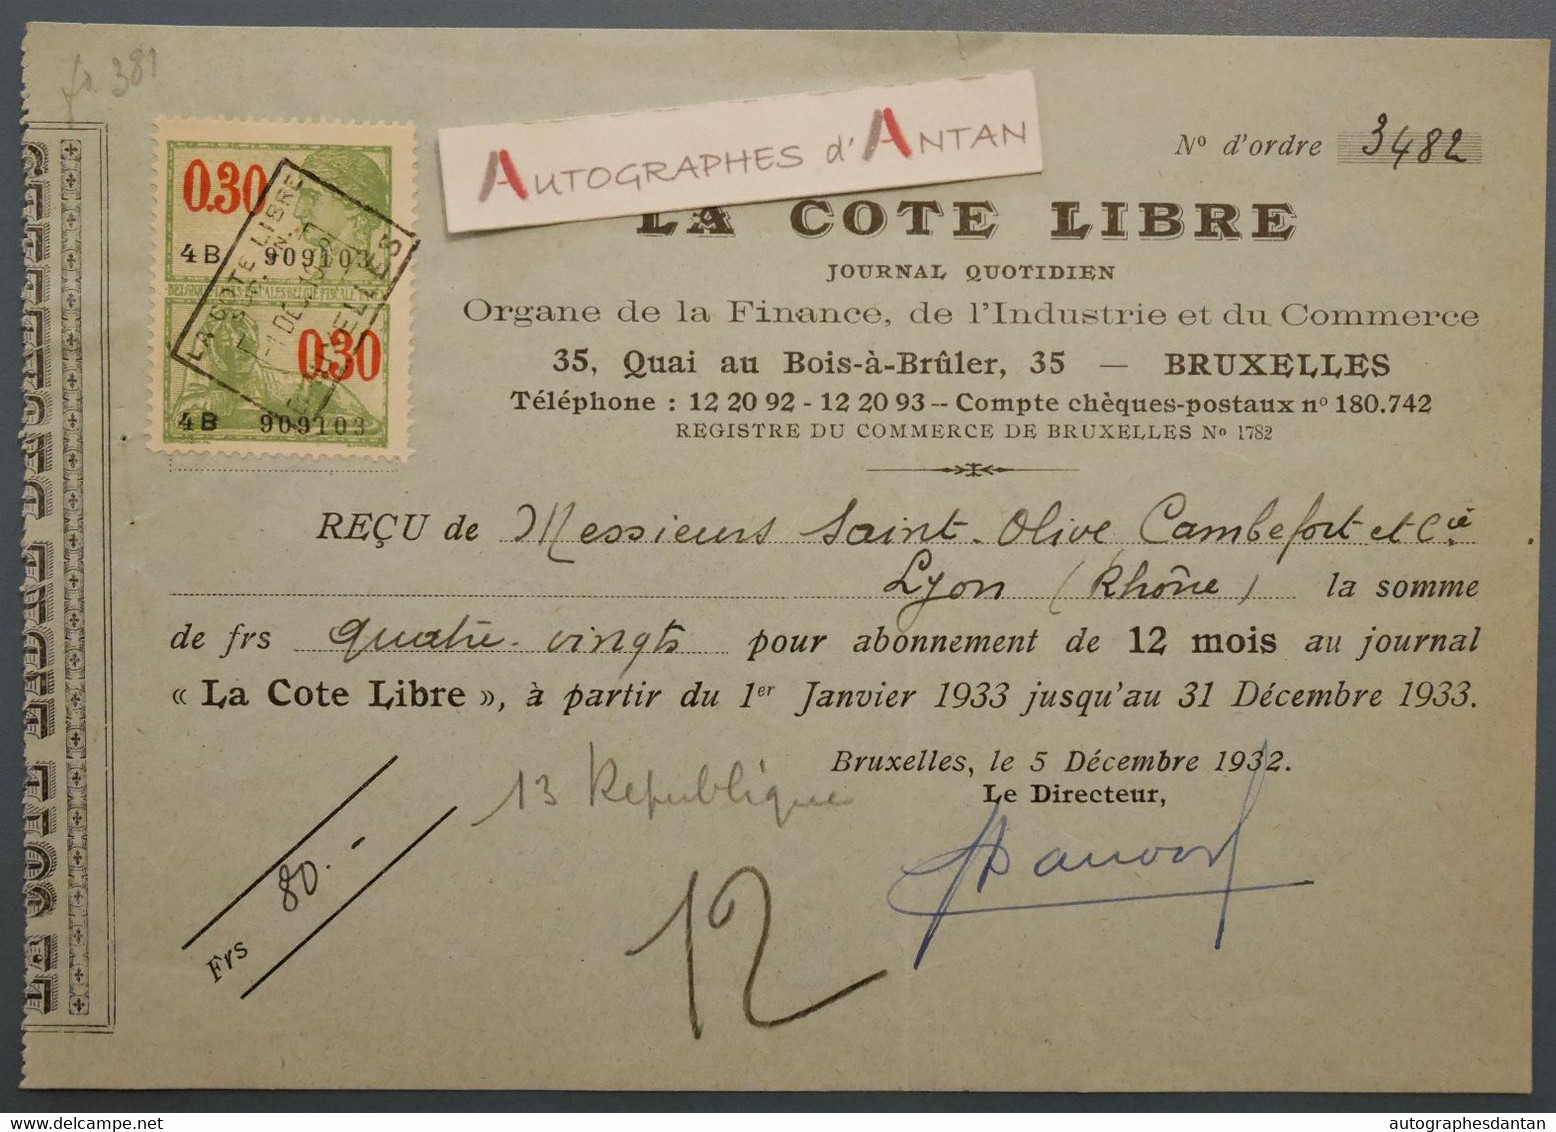 1932 Bruxelles La Cote Libre Journal Quotidien - Reçu Mrs Saint Olive Cambefort à Lyon - France Belgique - Timbre Fiscal - Bank & Insurance